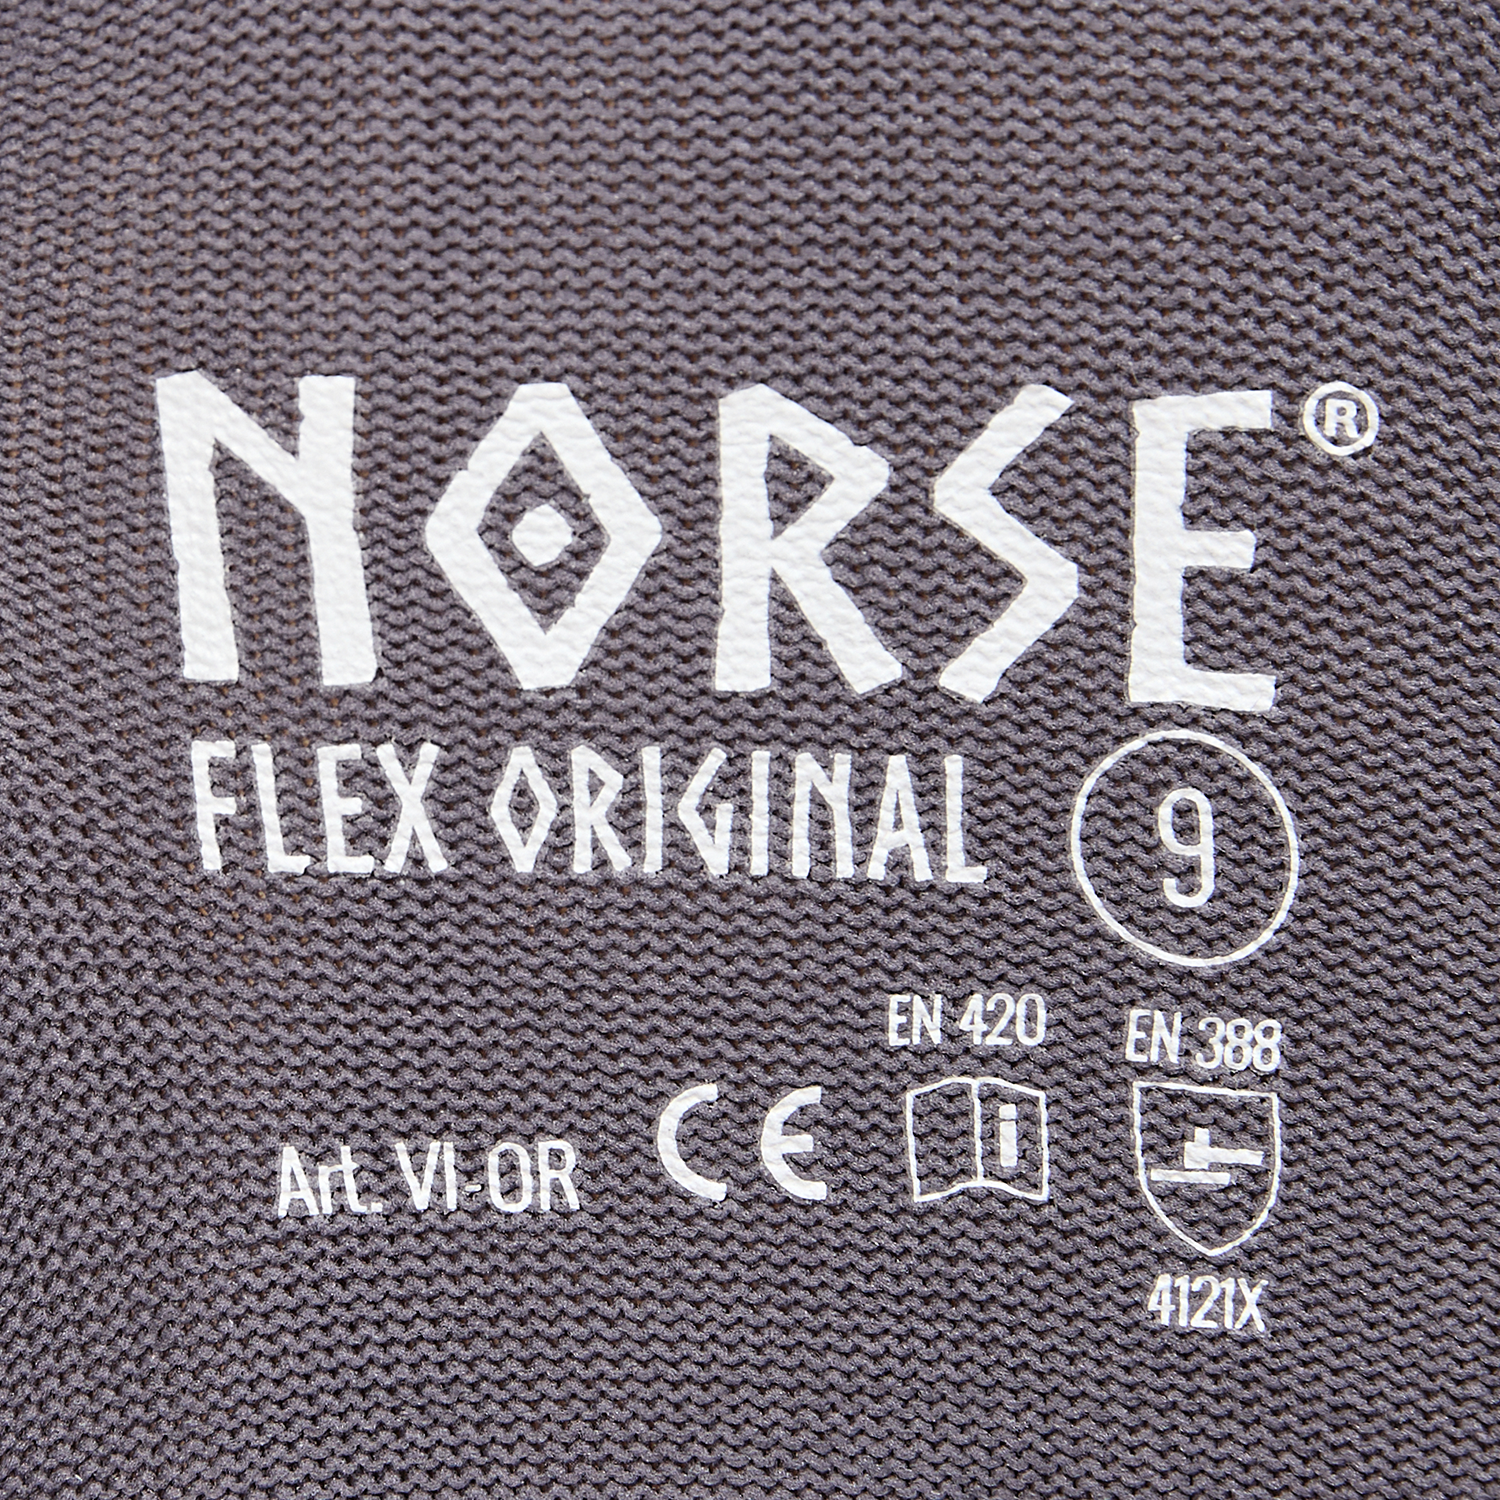 NORSE Flex Original Montagehandschuhe Größe 10